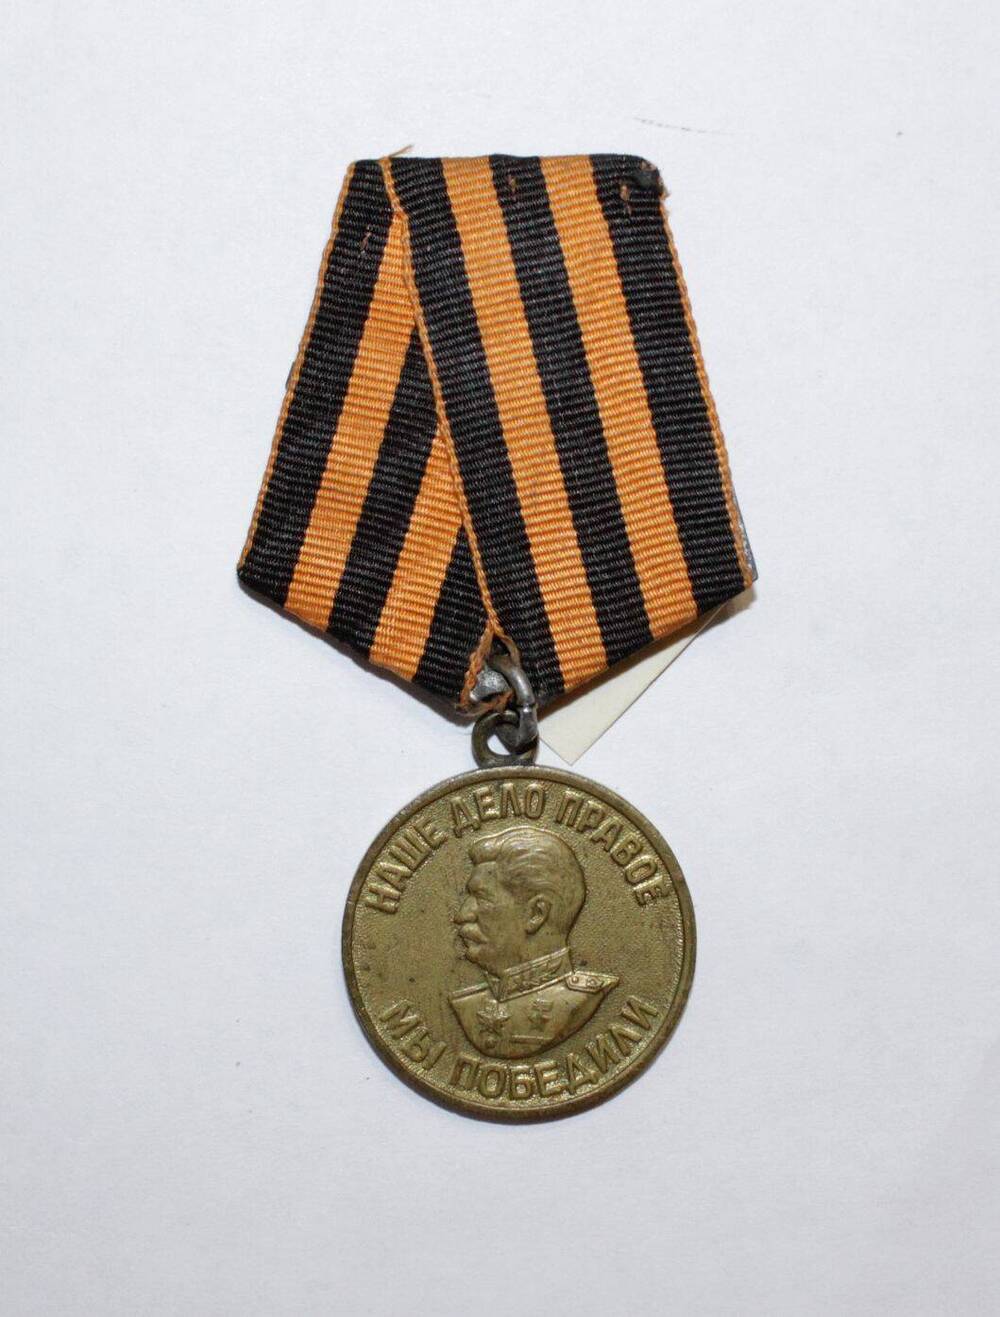 Медаль «За победу над Германией в Великой Отечественной войне 1941-1945 гг.». Кирьякова В.А.